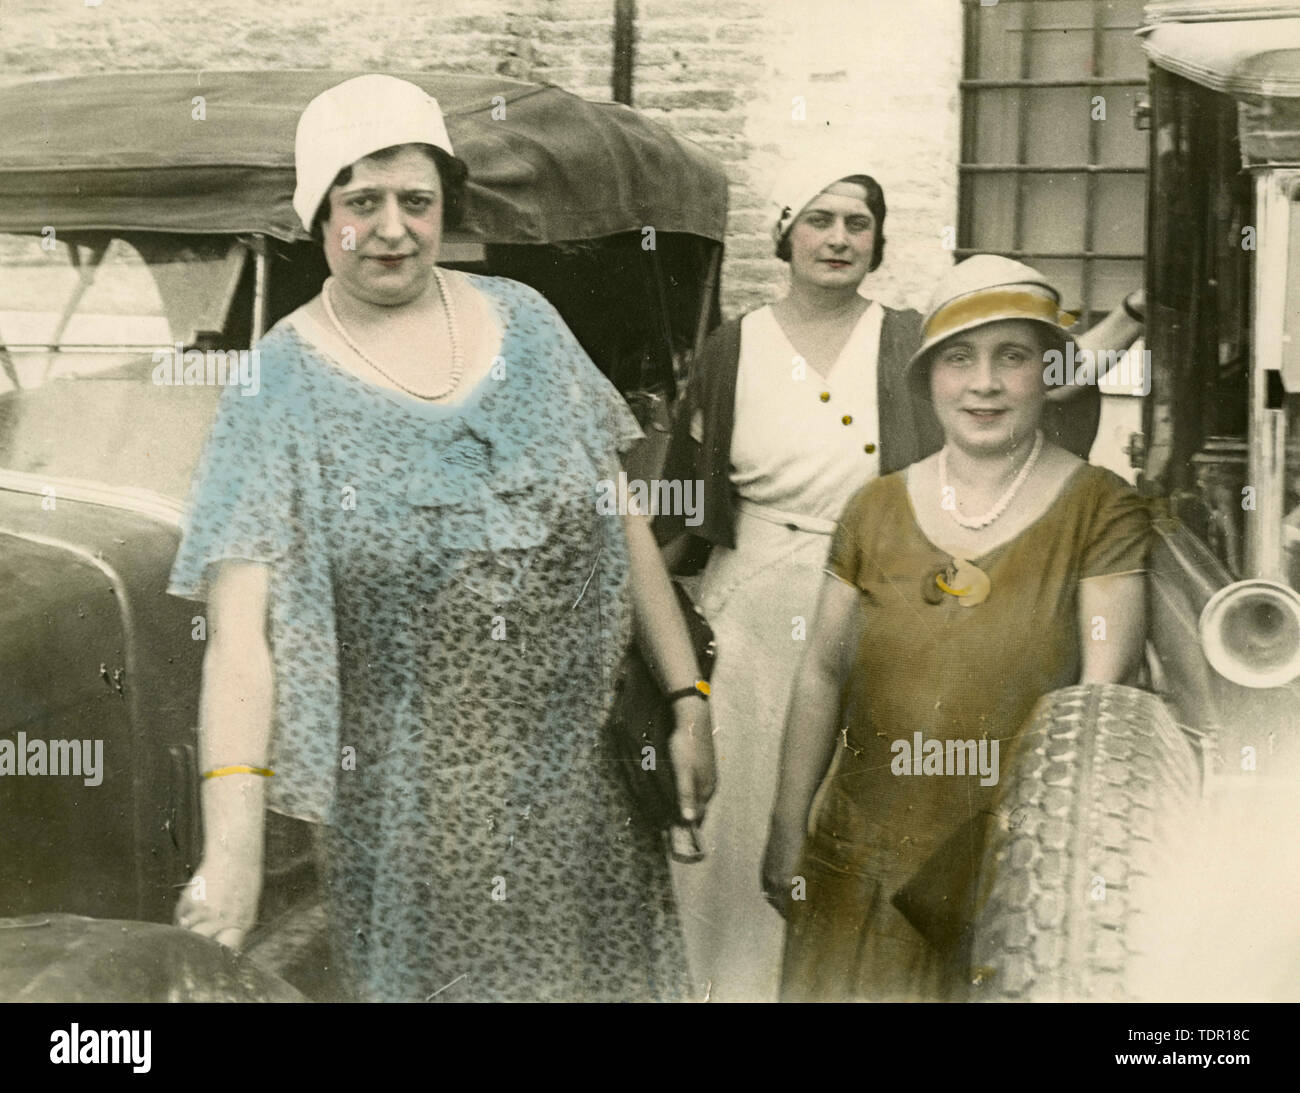 Three women next to the cars, Italy 1934 Stock Photo